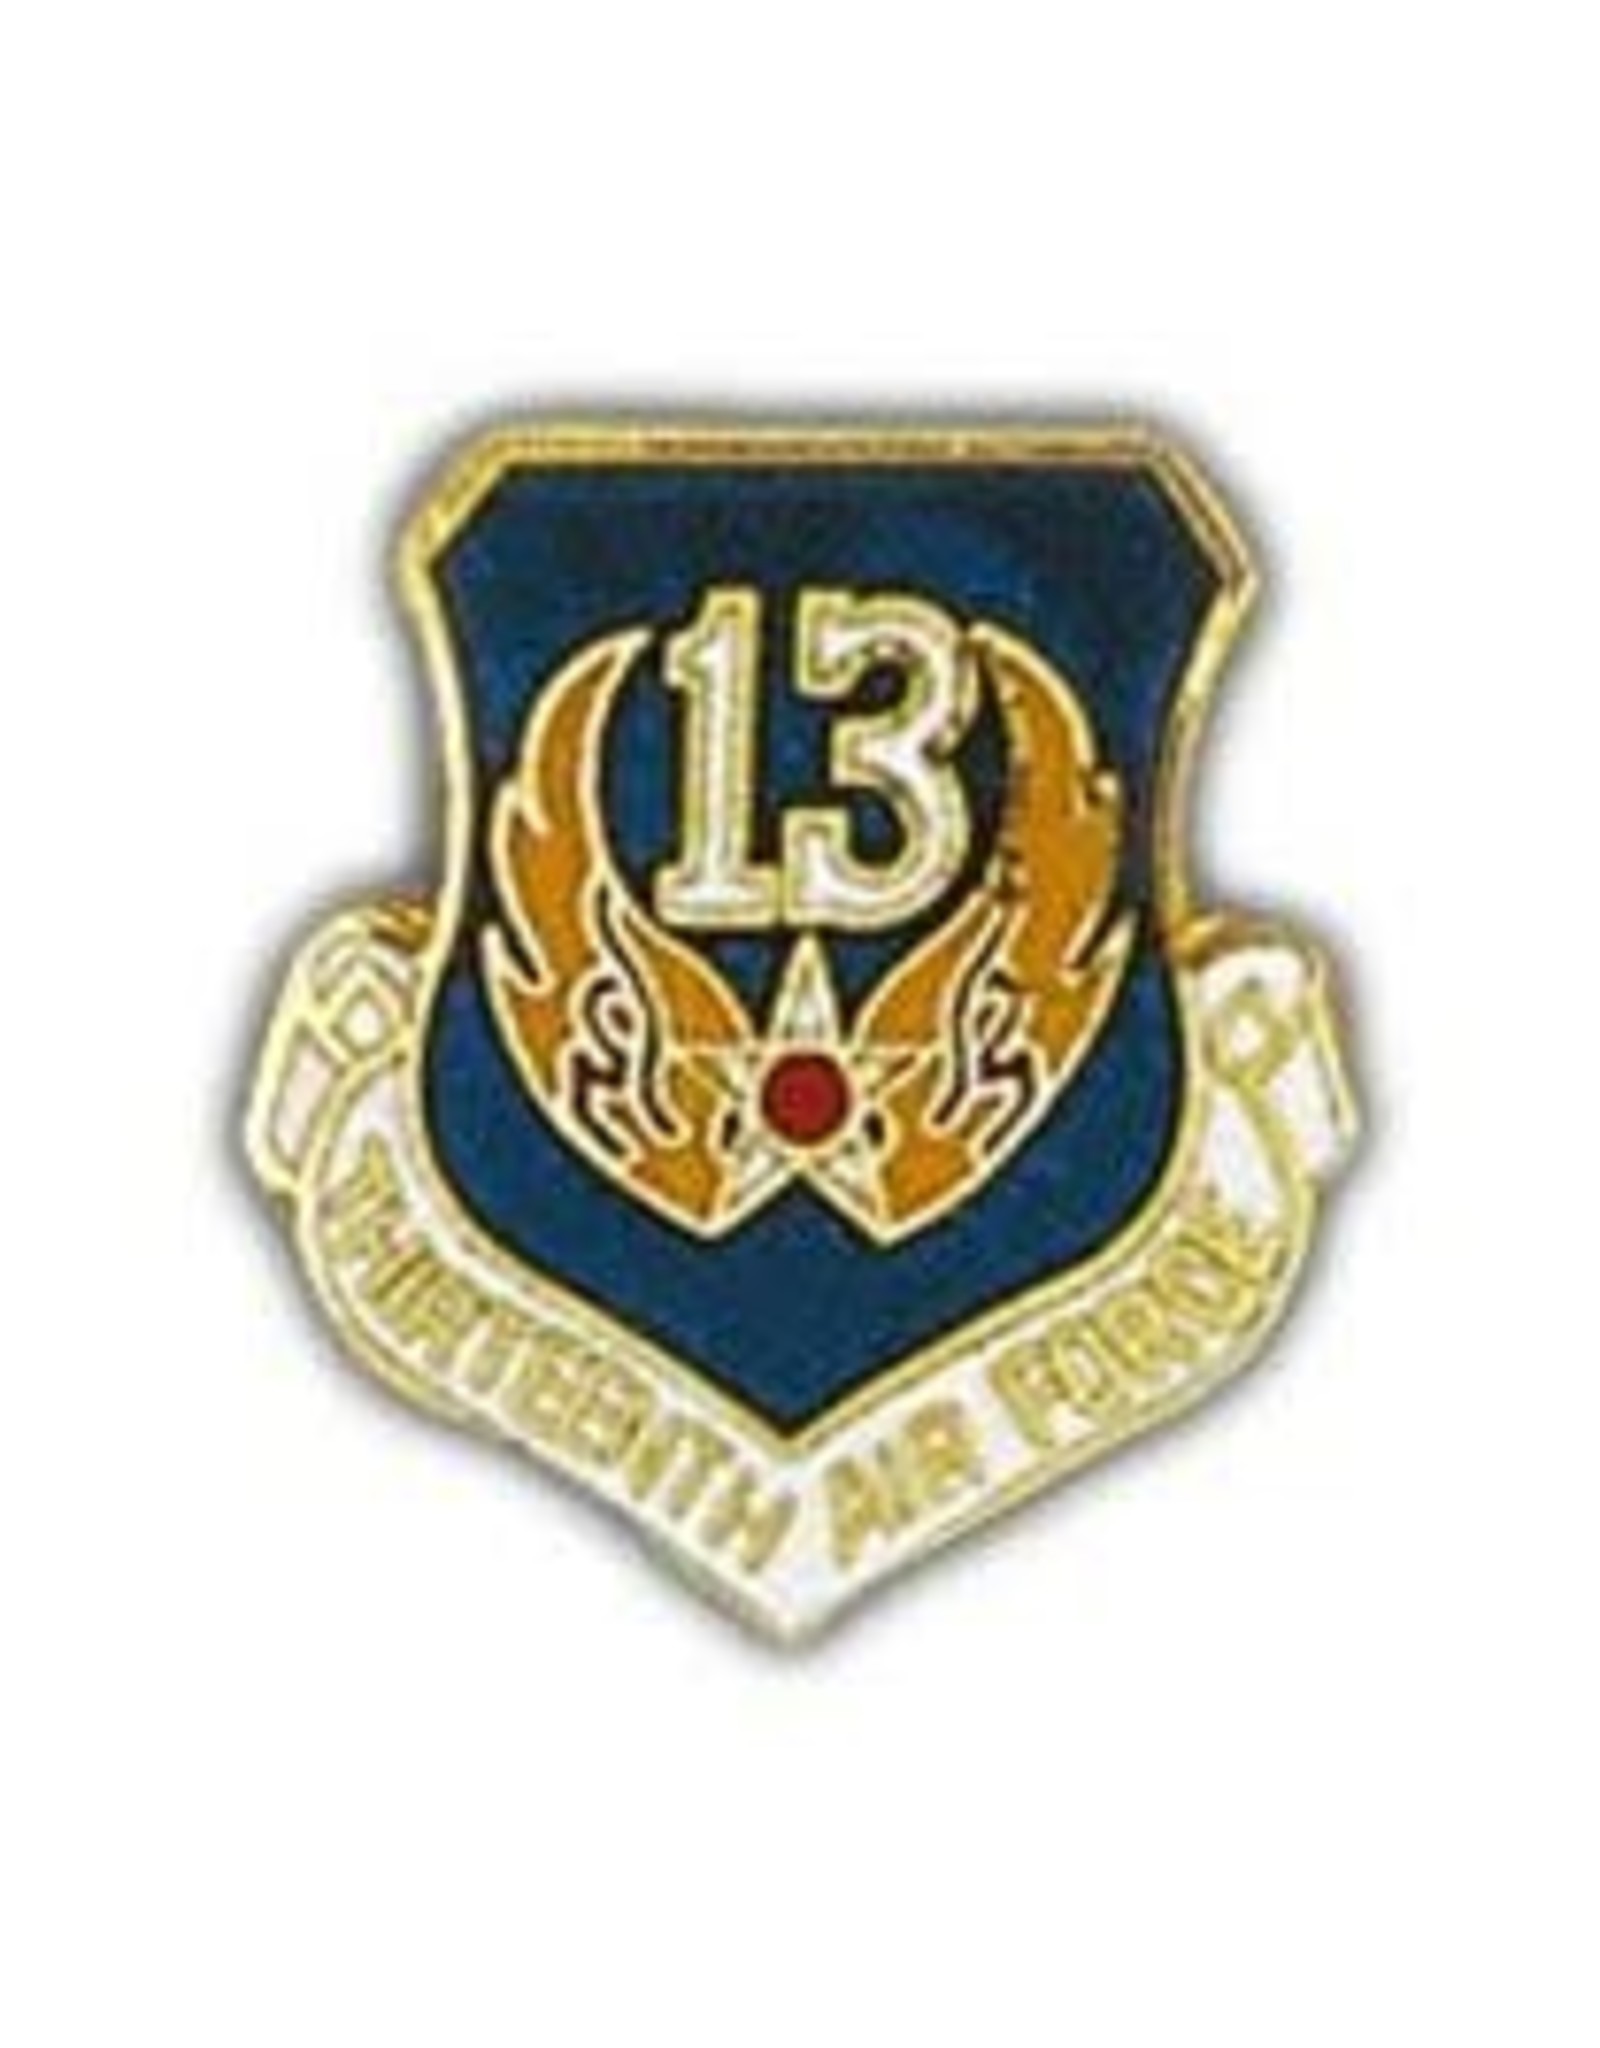 Pin  - USAF 013th Shield